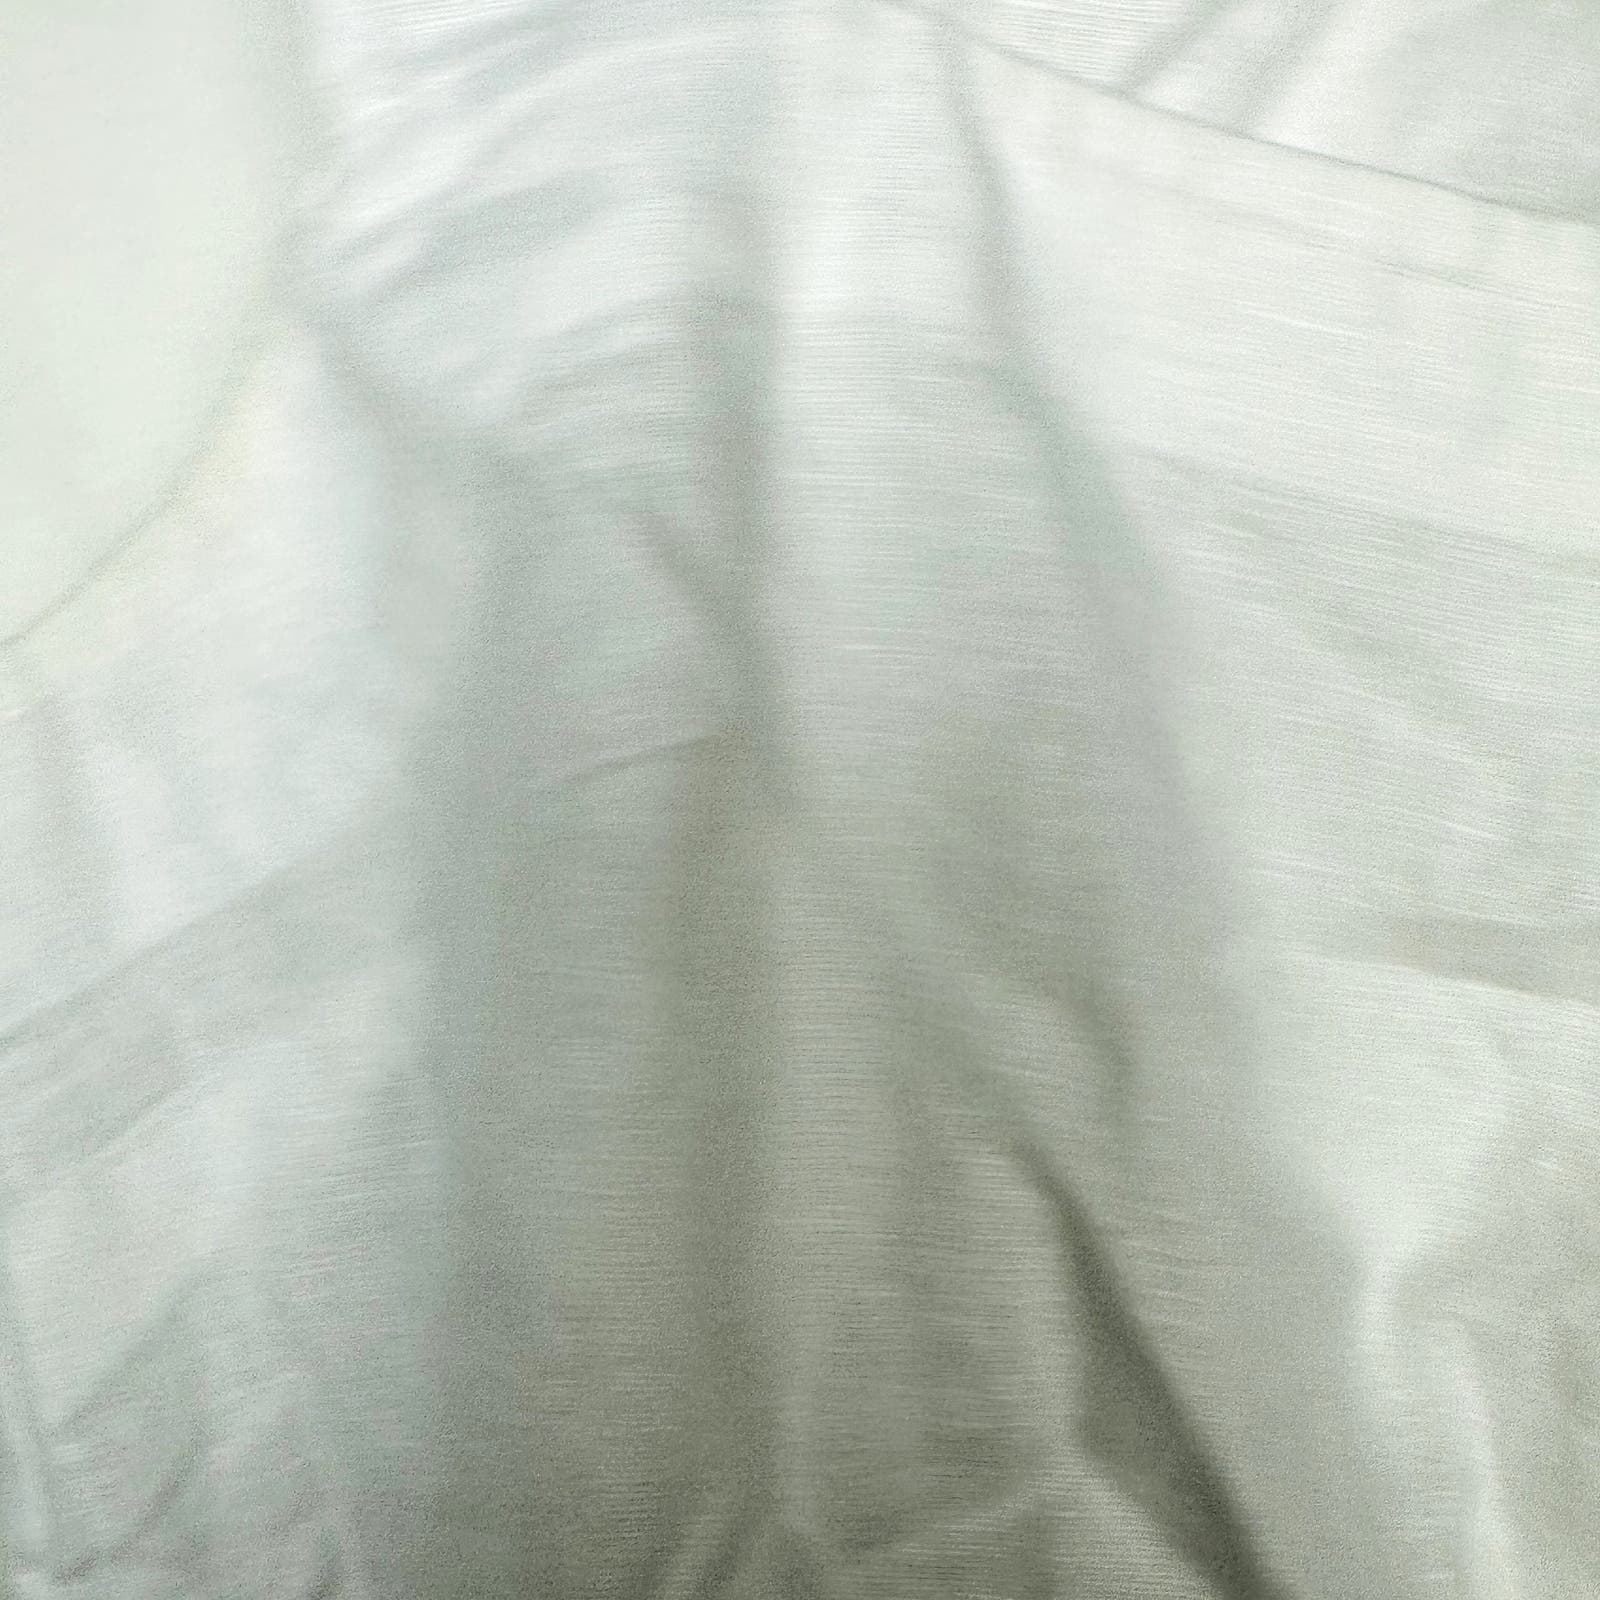 Madewell NWOT White Cross Back Sleeveless Linen Top Size 4